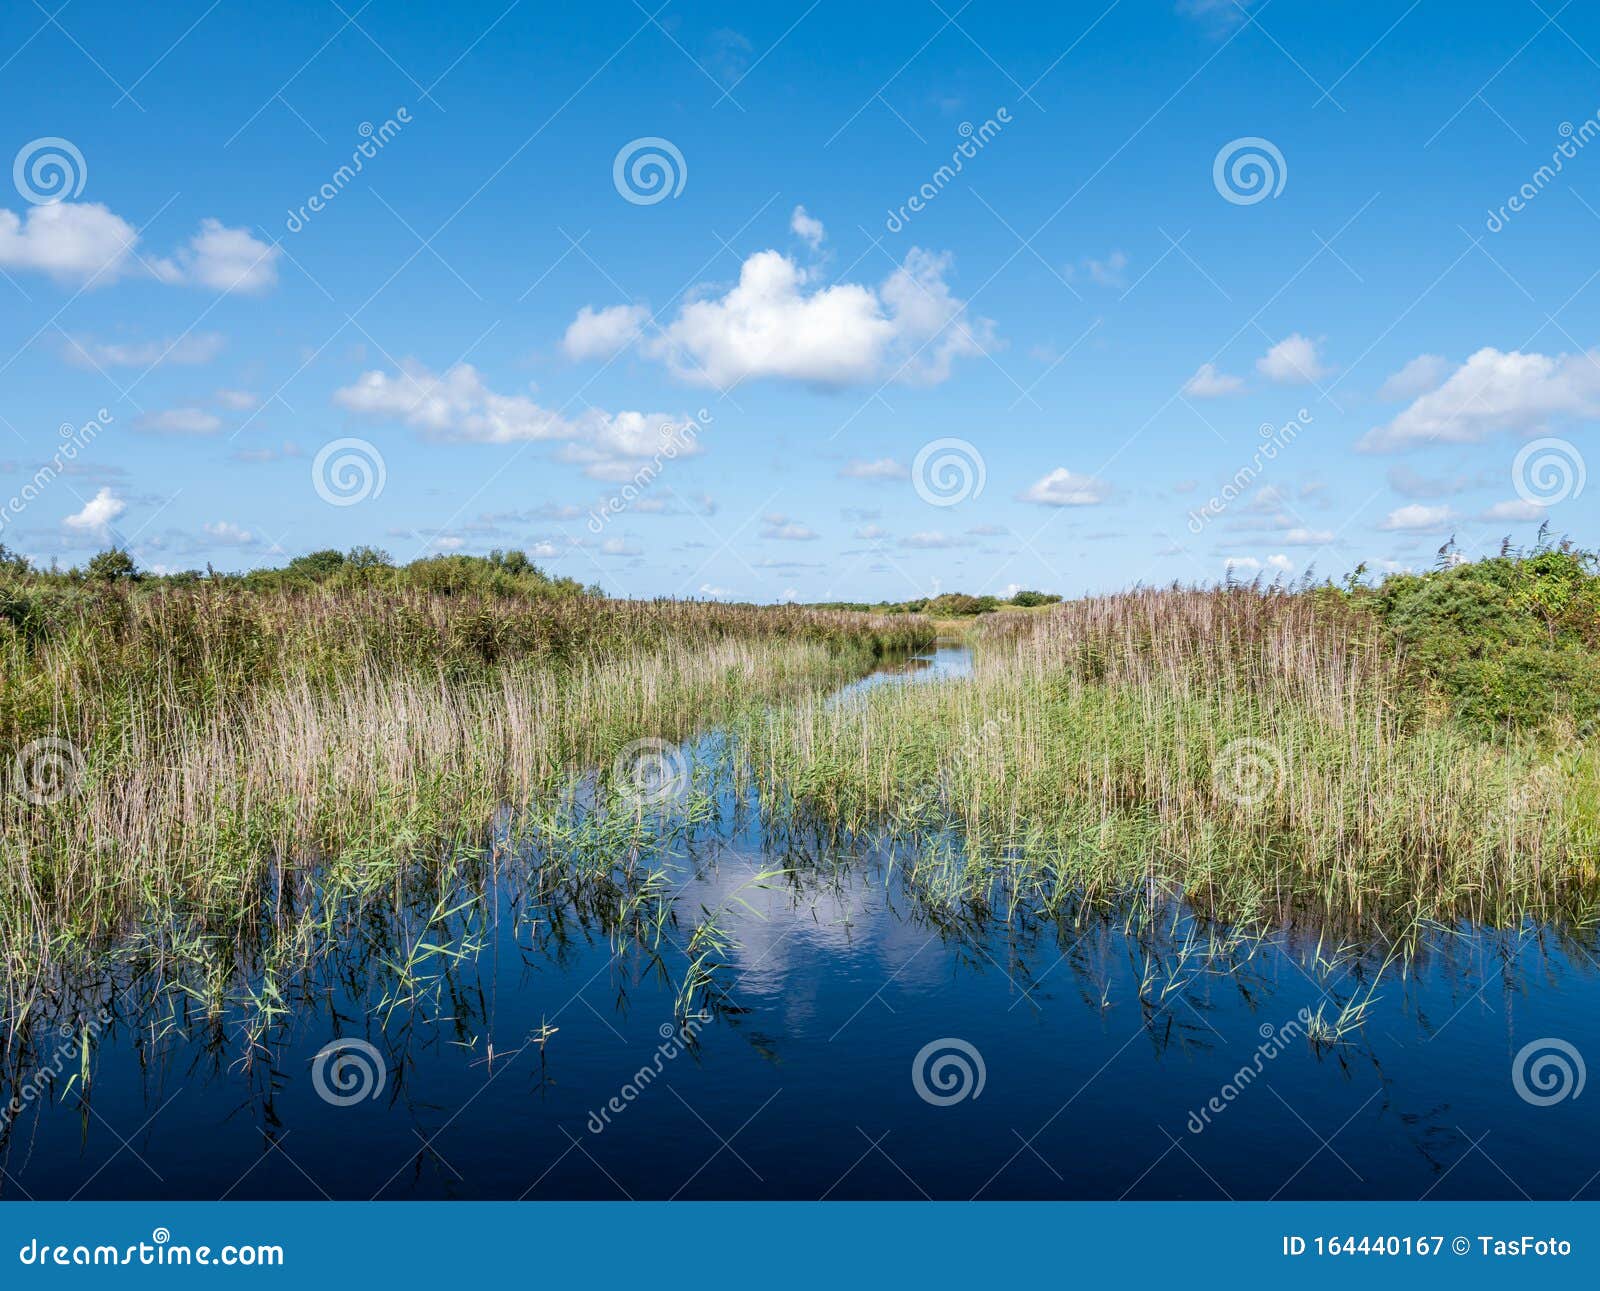 pond with reed in marsh of binnenkwelder on schiermonnikoog, netherlands